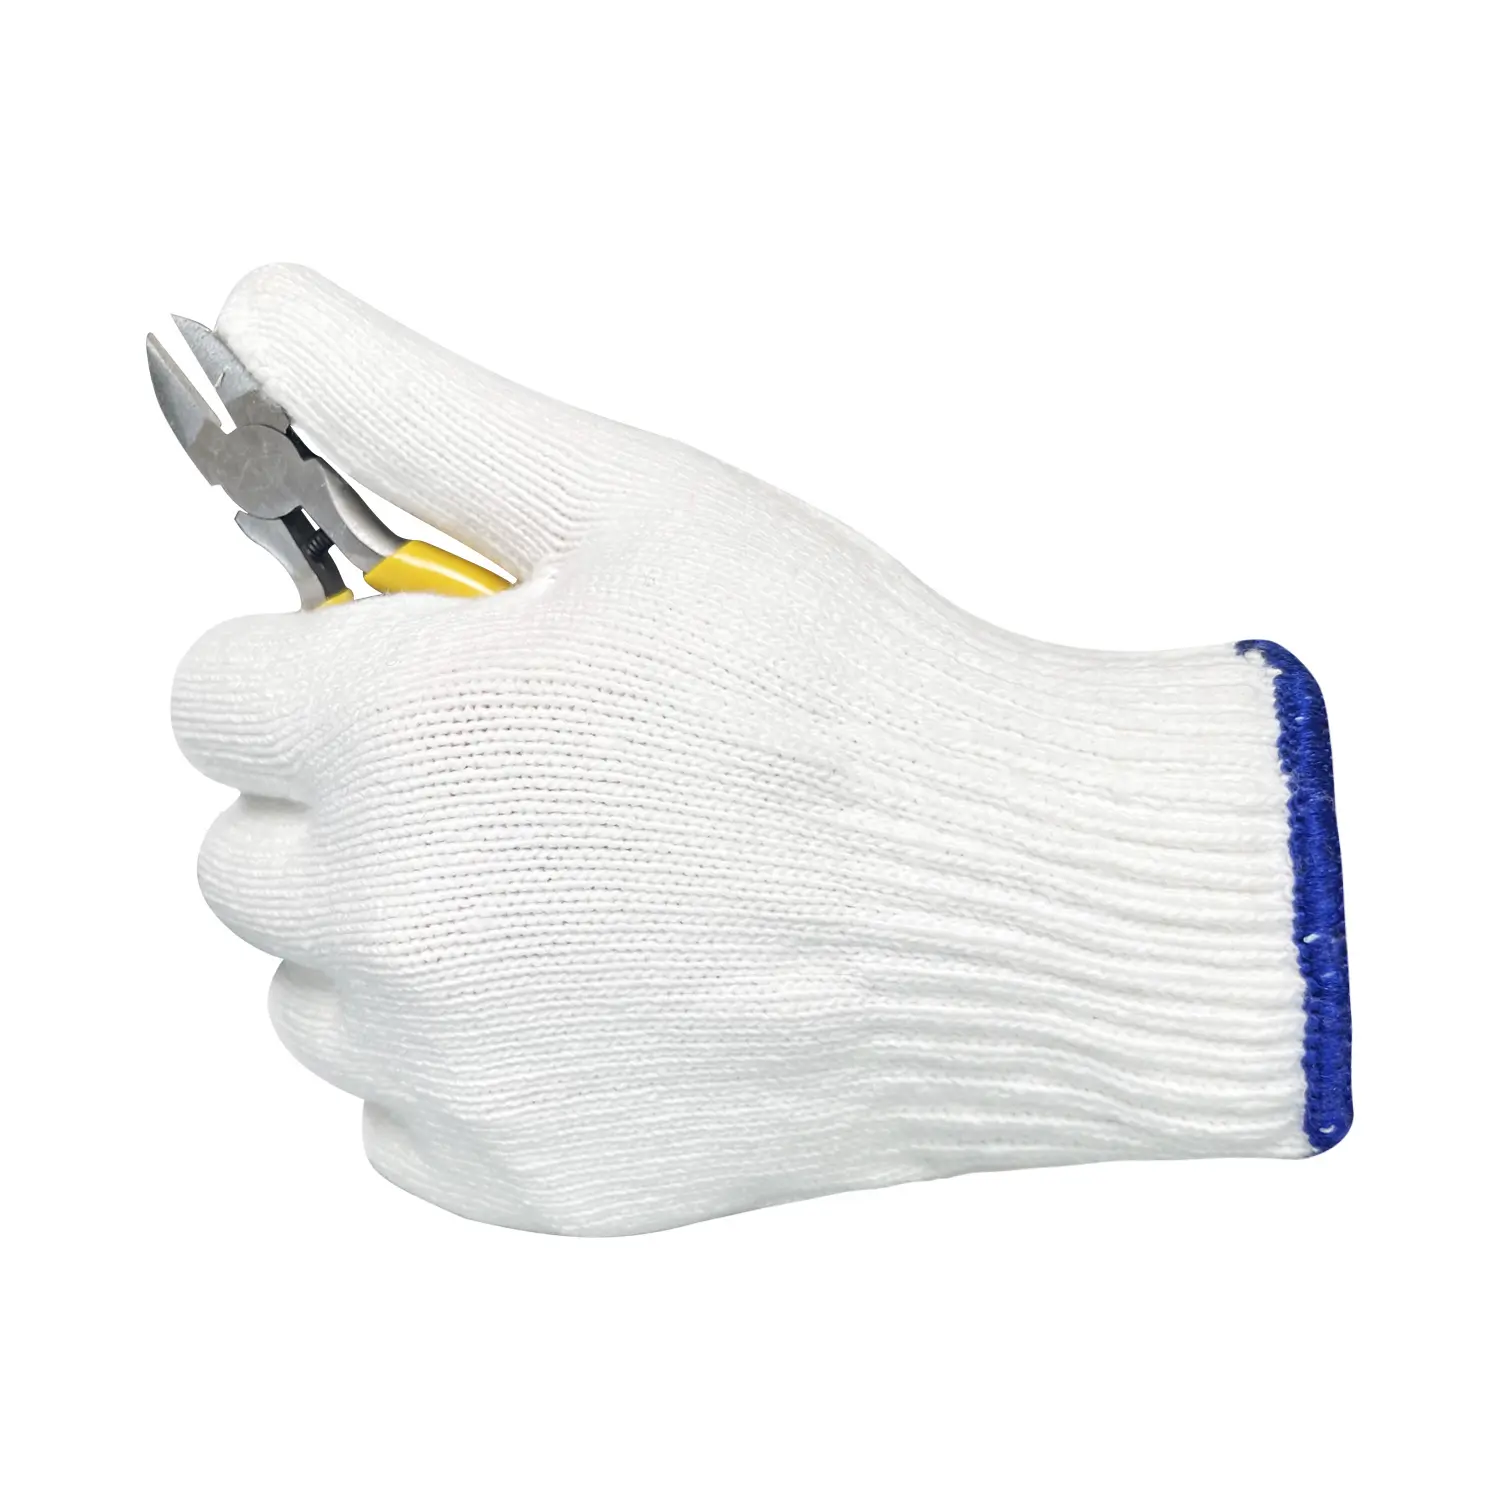 ถุงมือผ้าฝ้ายสีขาวบริสุทธิ์ถักถุงมือมือถุงมือทำงานสำหรับการก่อสร้าง